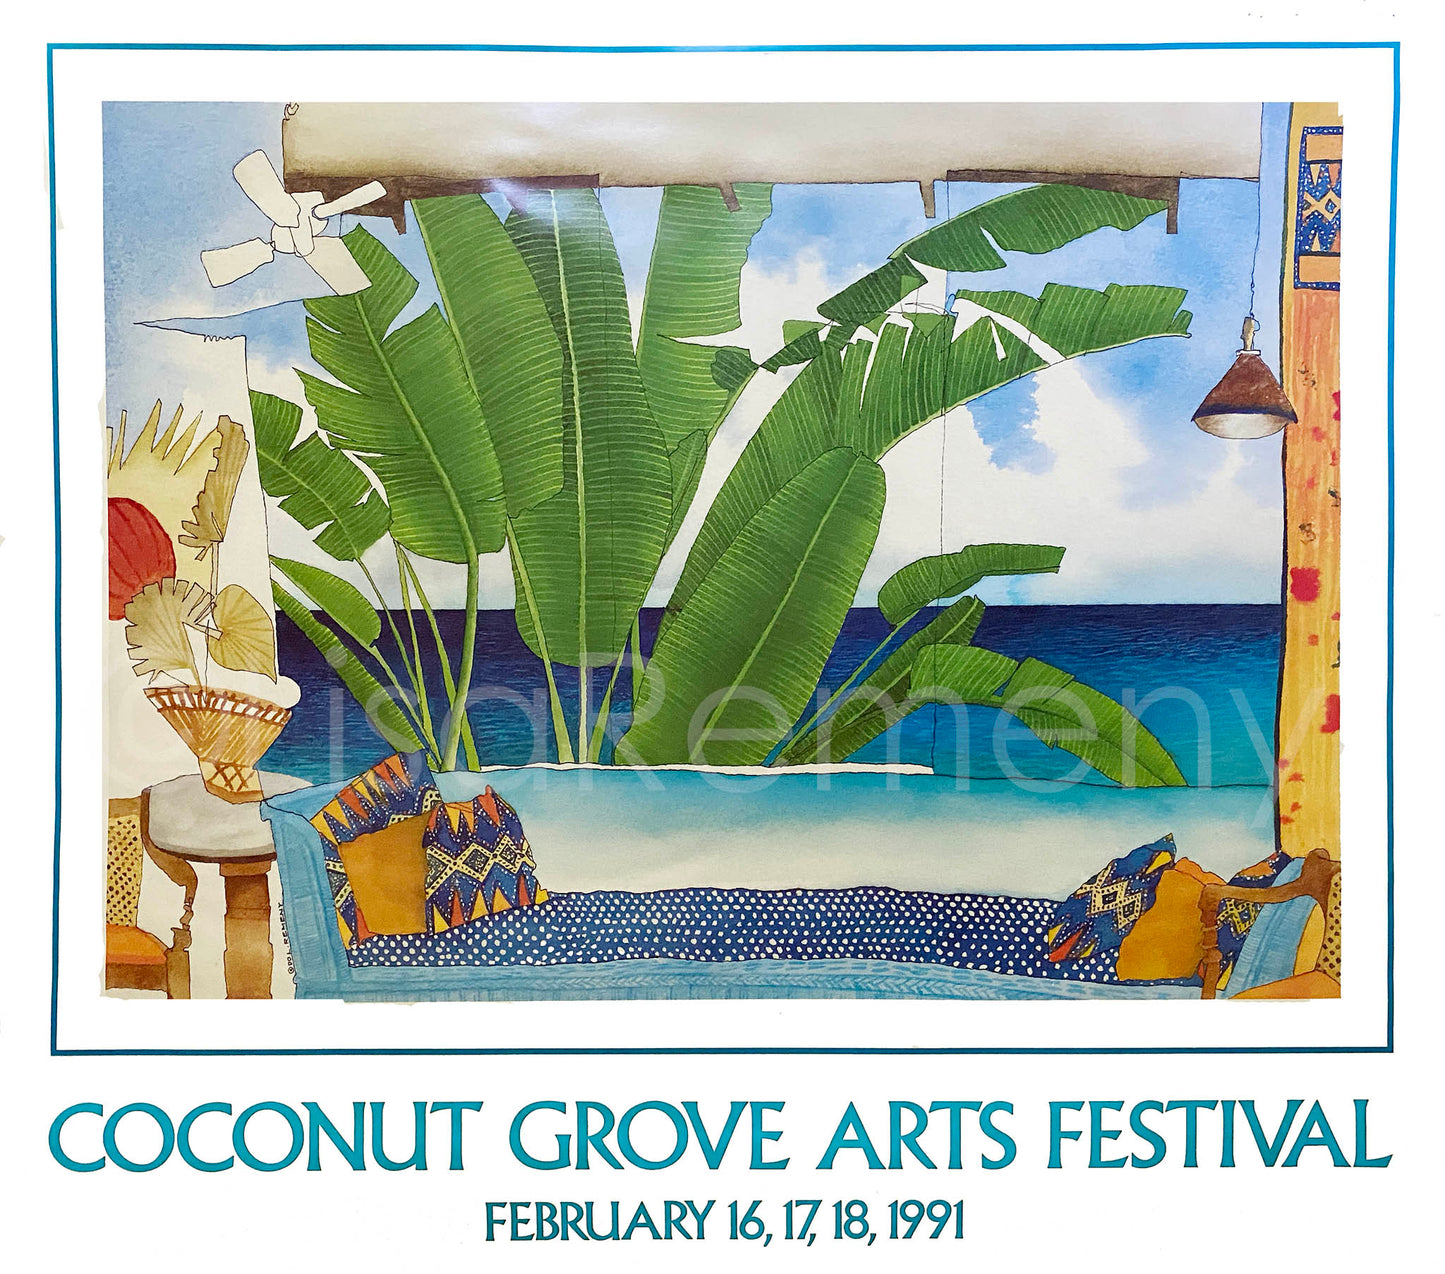 Poster 1991 Coconut Grove Arts Festival